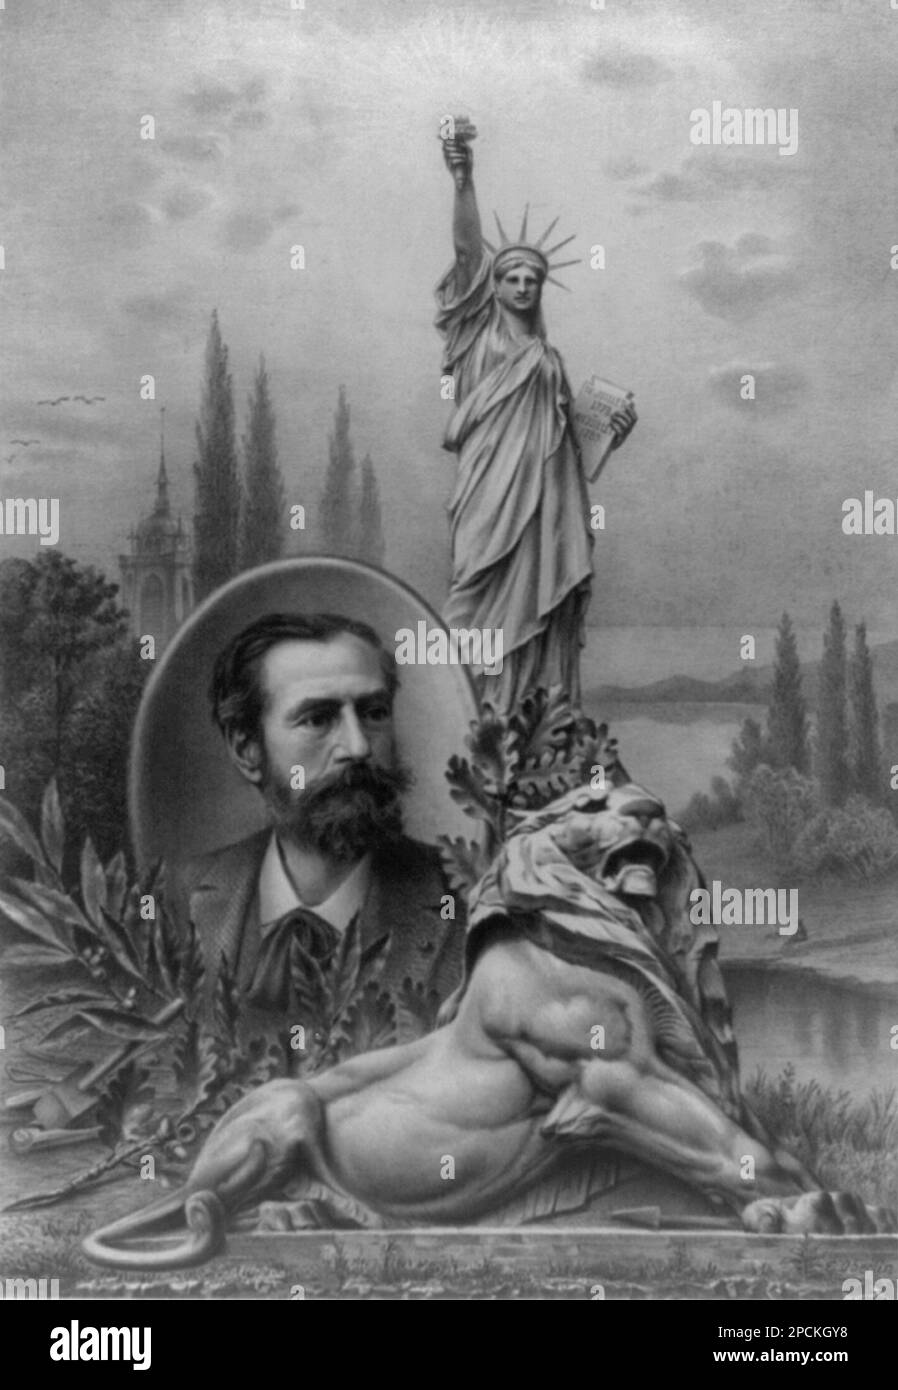 1900 CA, New York , Etats-Unis : l'architecte et sculpteur français FRÉDÉRIC AUGUSTE BARTHOLDI ( 1834 - 1904 ), portrait allégorique avec panorama alsacien , la Statue de la liberté et le Lion . Batholdi était l'auteur de la Statue de la liberté dans le port de New York . Frédéric Auguste Bartholdi était un sculpteur français qui étudiait à l'origine la peinture sous la direction d'Ari Scheffer. Ses principales écueils incluent 'Switzerland Succoring Strabourg', à Bâle, en Suisse, des statues à Colmar, à Clermont-Ferrand, À Belfort, à Paris, et à Union Square à New York. Il aurait été un Freemason. La face de t Banque D'Images